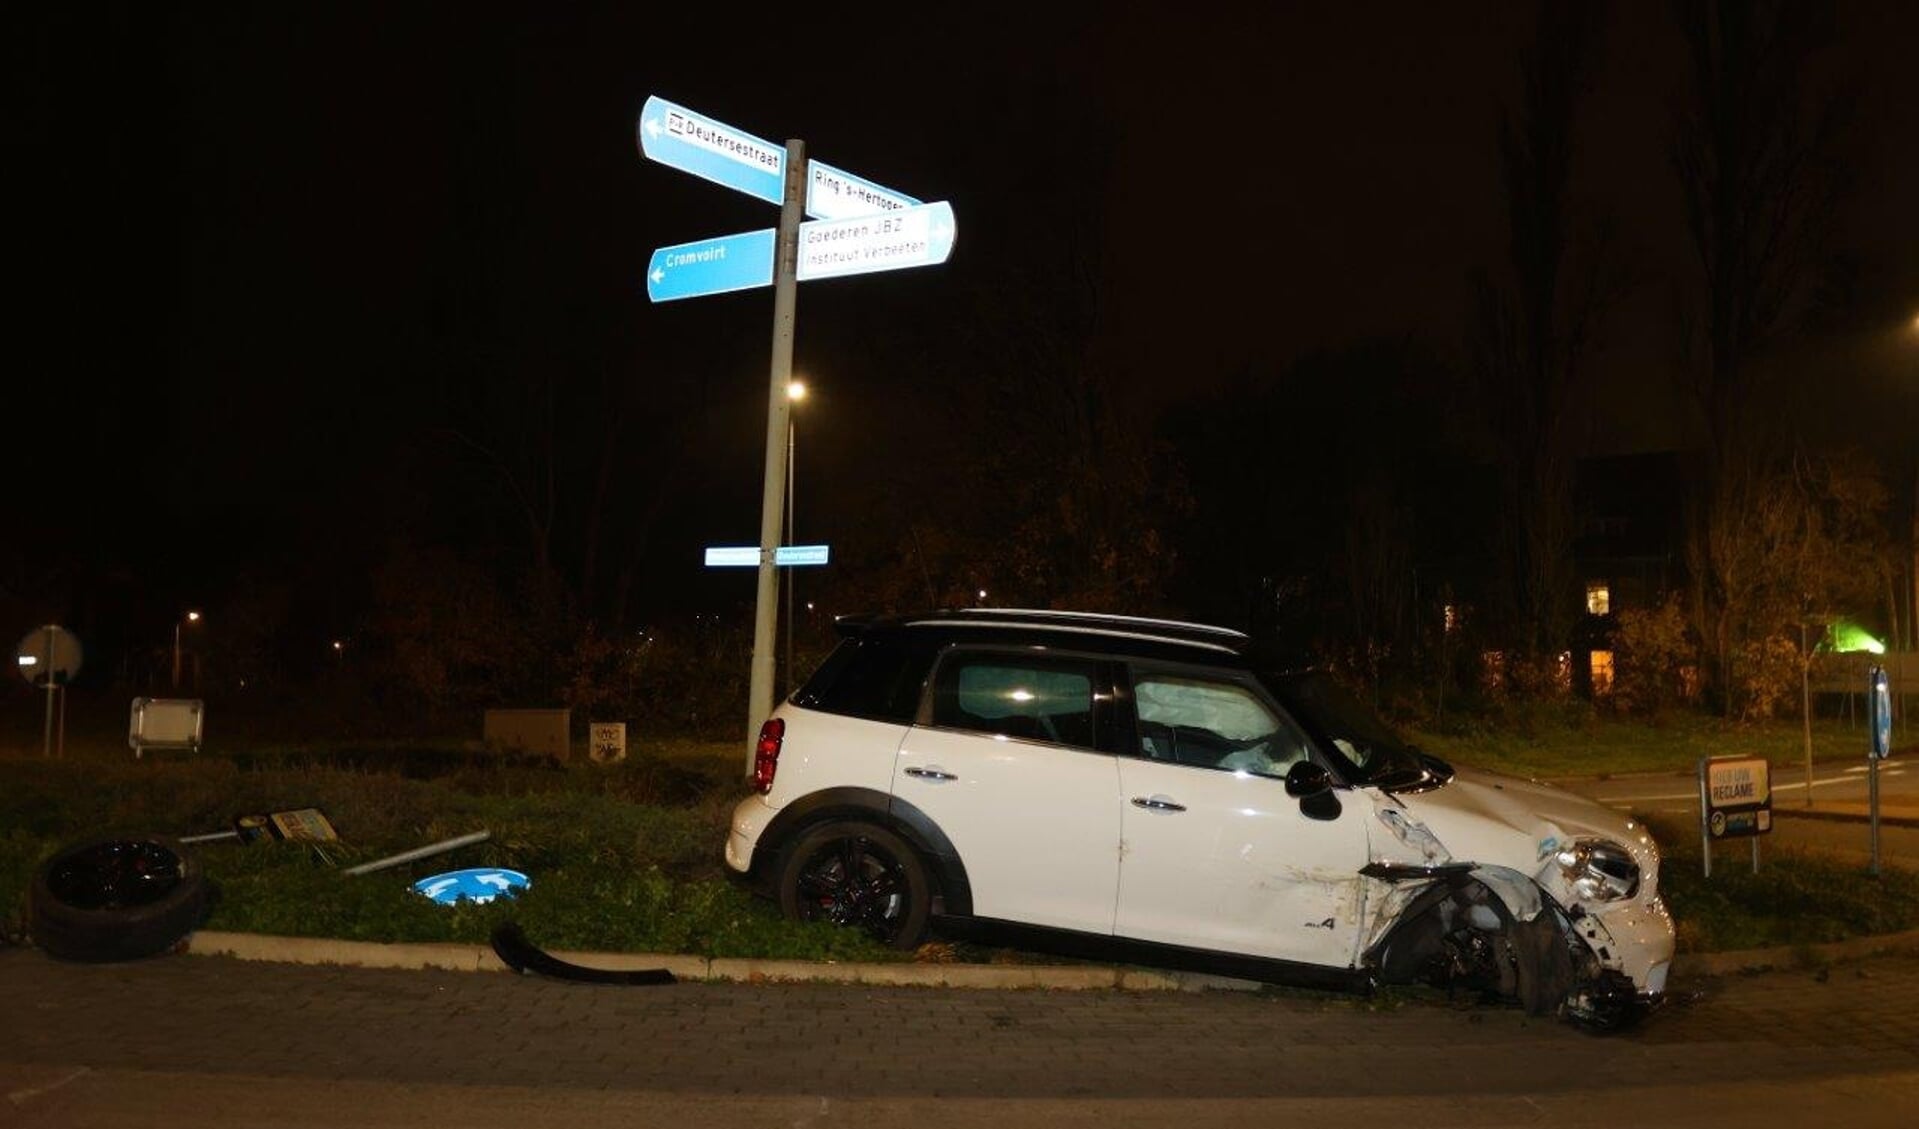 Donderdagavond rond 22.30 uur heeft er een eenzijdig ongeval plaatsgevonden aan de Deutersestraat in Den Bosch.